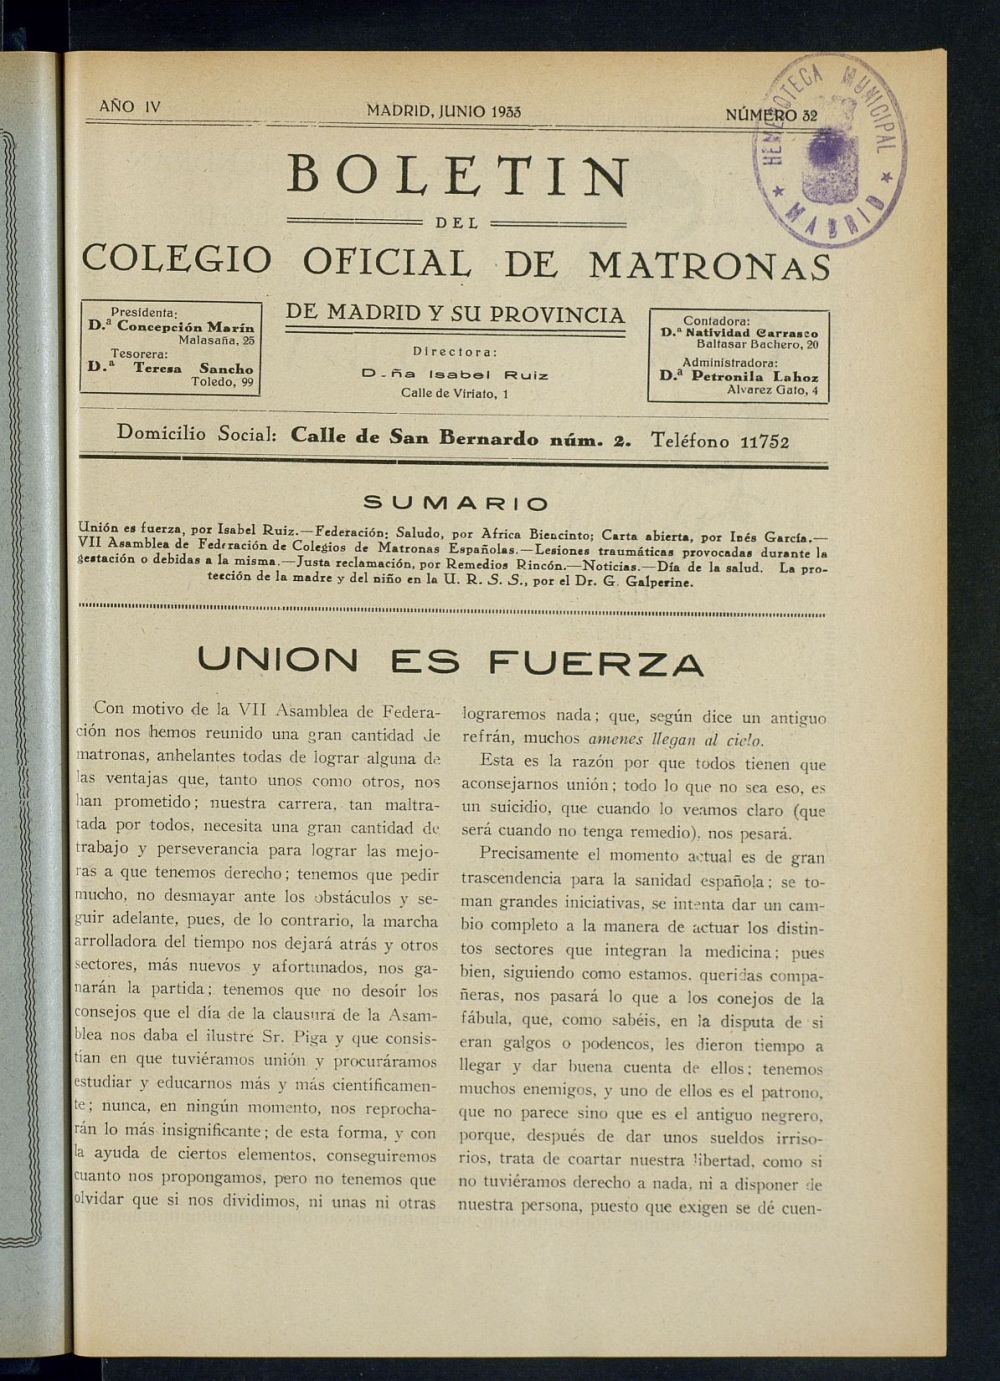 Boletn del Colegio Oficial de Matronas de Madrid y su Provincia de junio de 1933